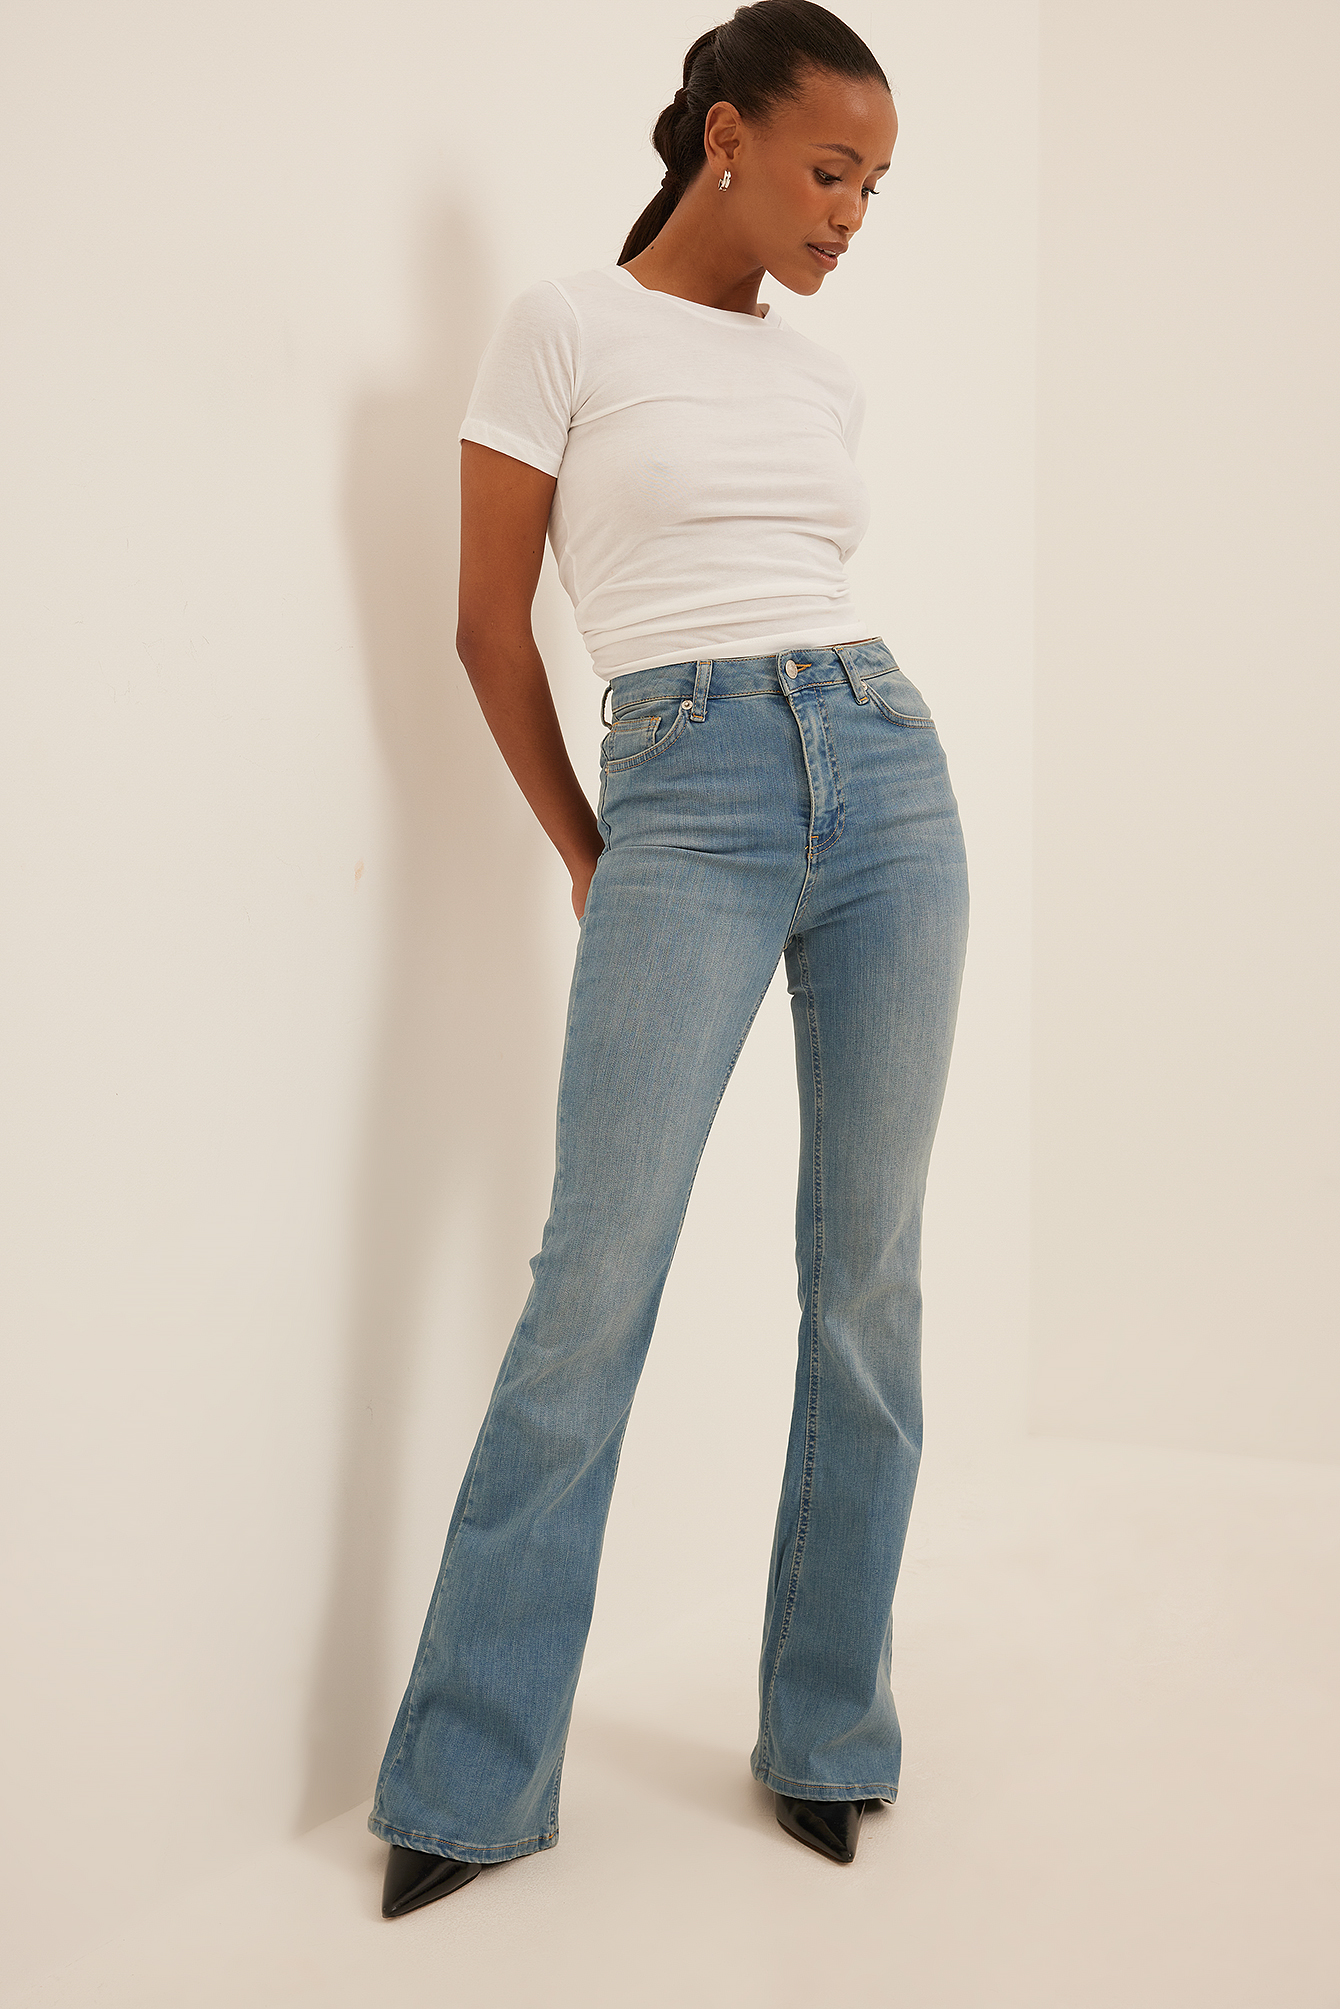 Femme Vêtements Jeans Jeans à pattes d’éléphant Sofia Coelho x Débardeur dos ouvert Jean NA-KD en coloris Noir 60 % de réduction 